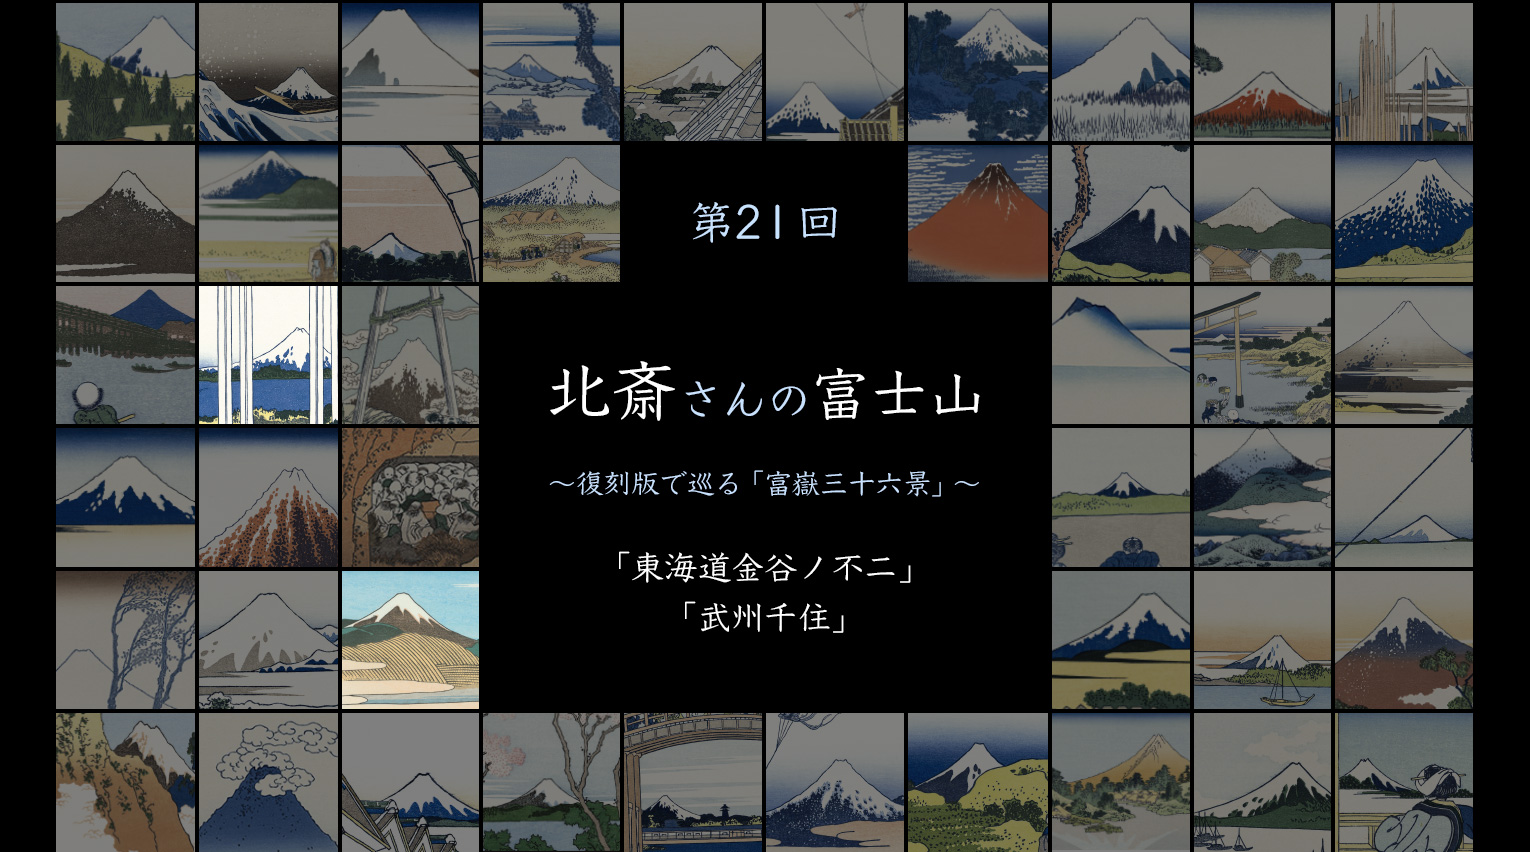 北斎さんの富士山 〜復刻版で見る「富嶽三十六景」〜 (21)【PR】